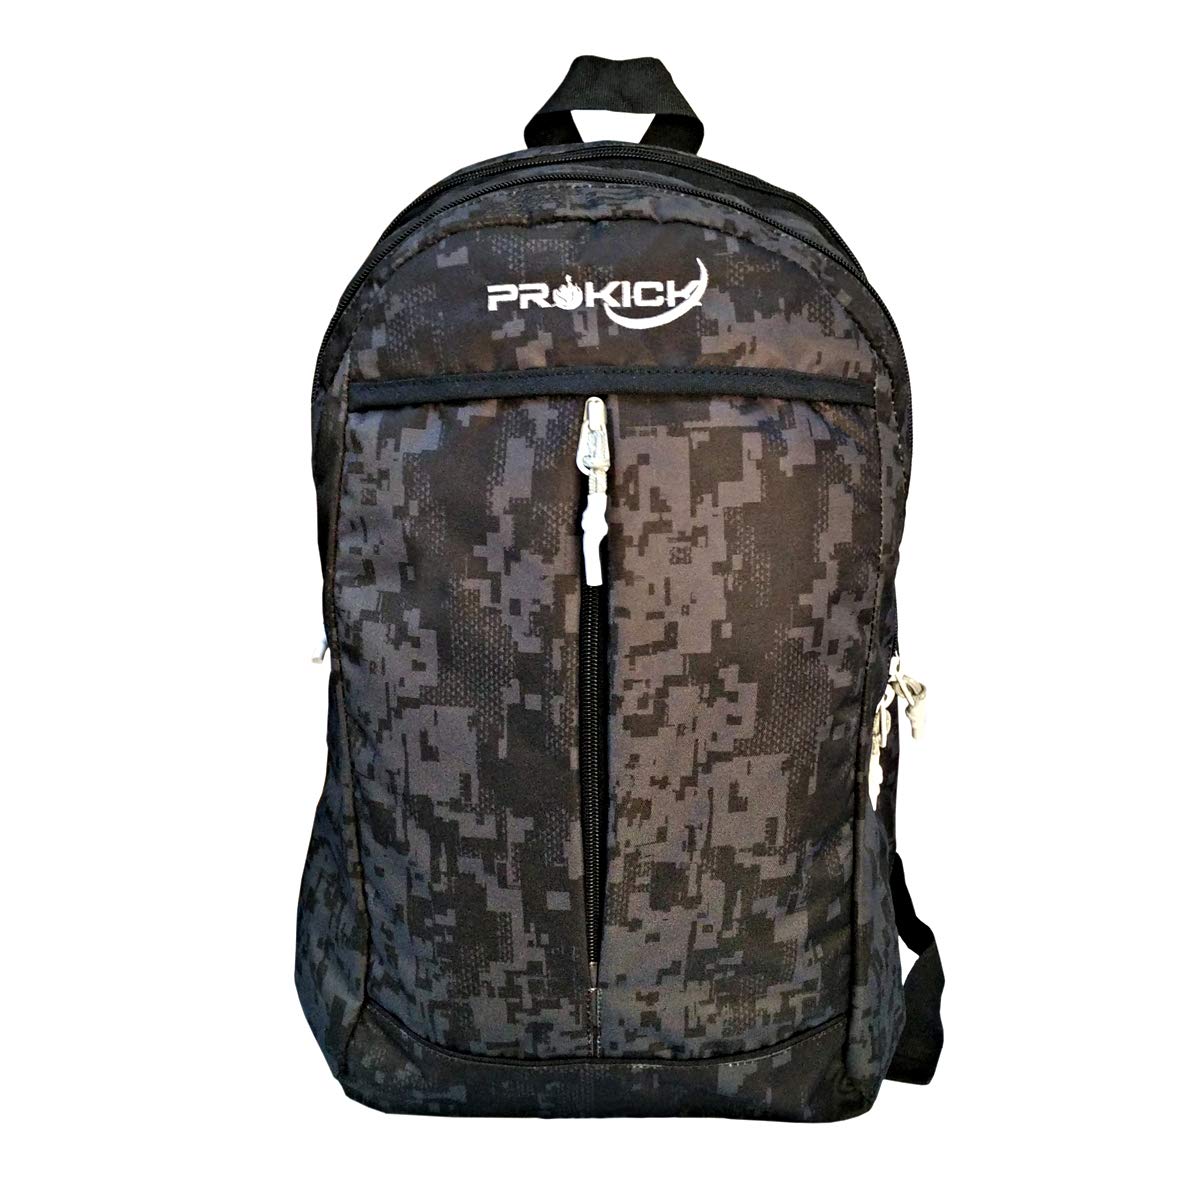 Prokick 30L Waterproof Casual Backpack | School Bag - Black Matrix - Best Price online Prokicksports.com